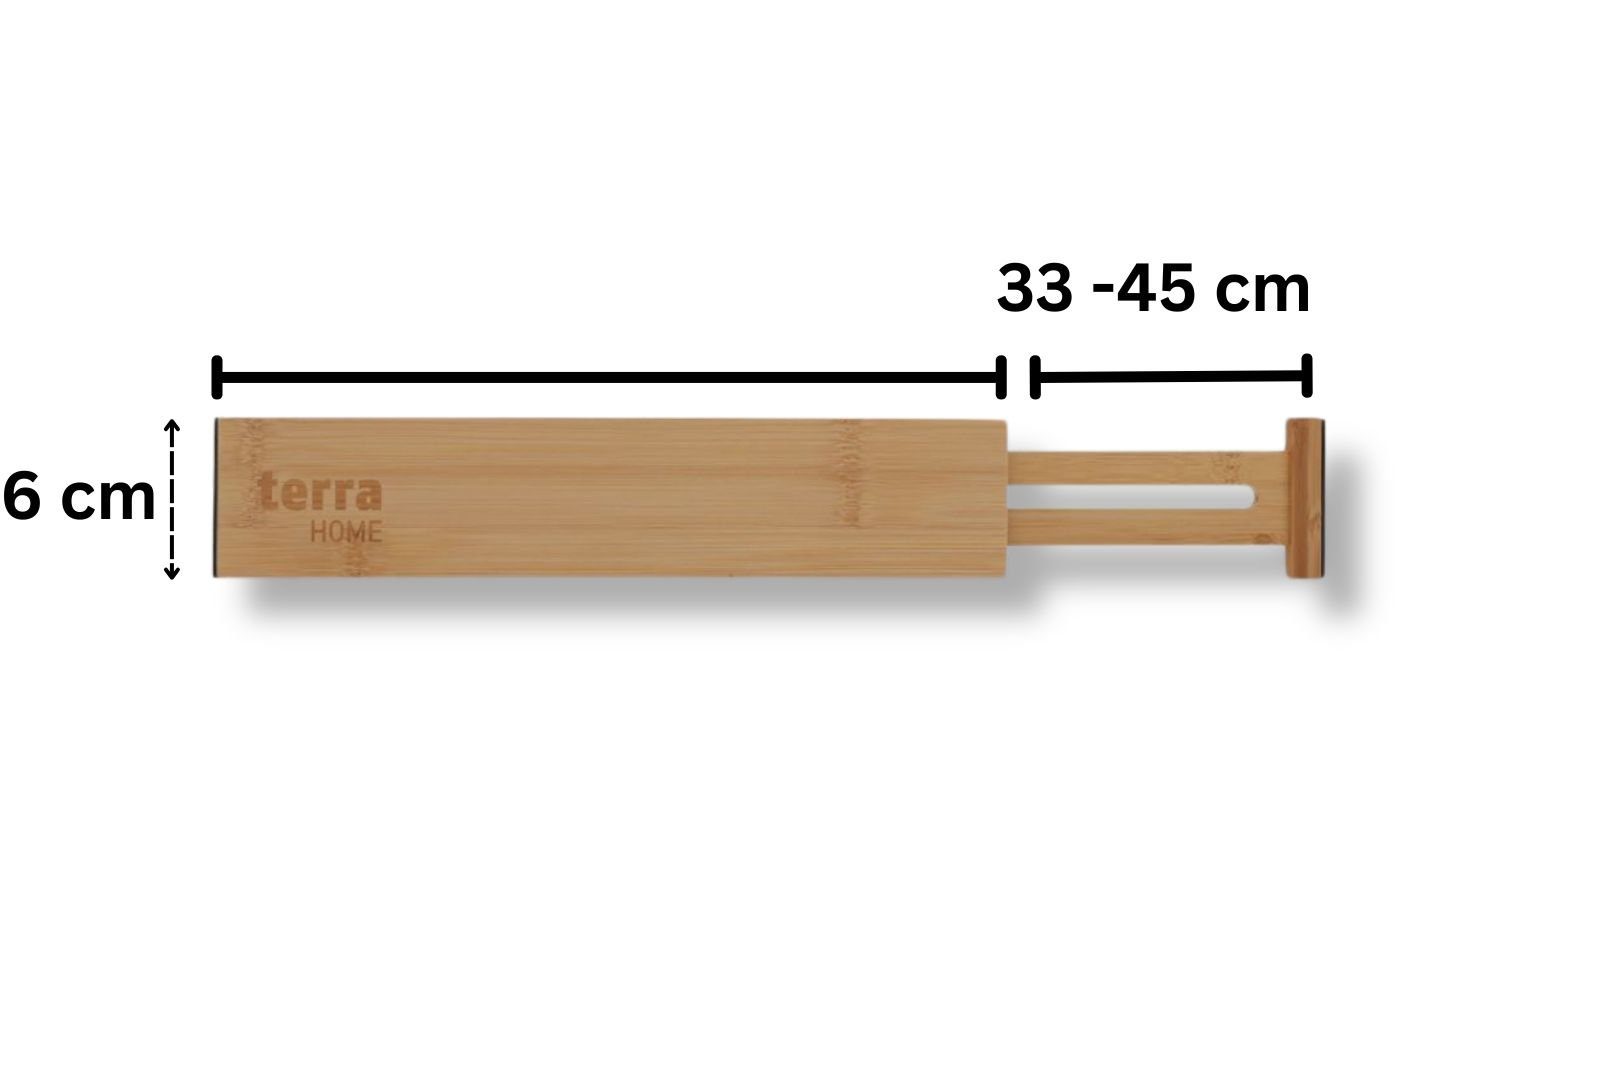 Set bis 45 Bambus Schubladentrenner Besteckeinsatz Home Terra Pack 4er 33 Ordnungssystem cm